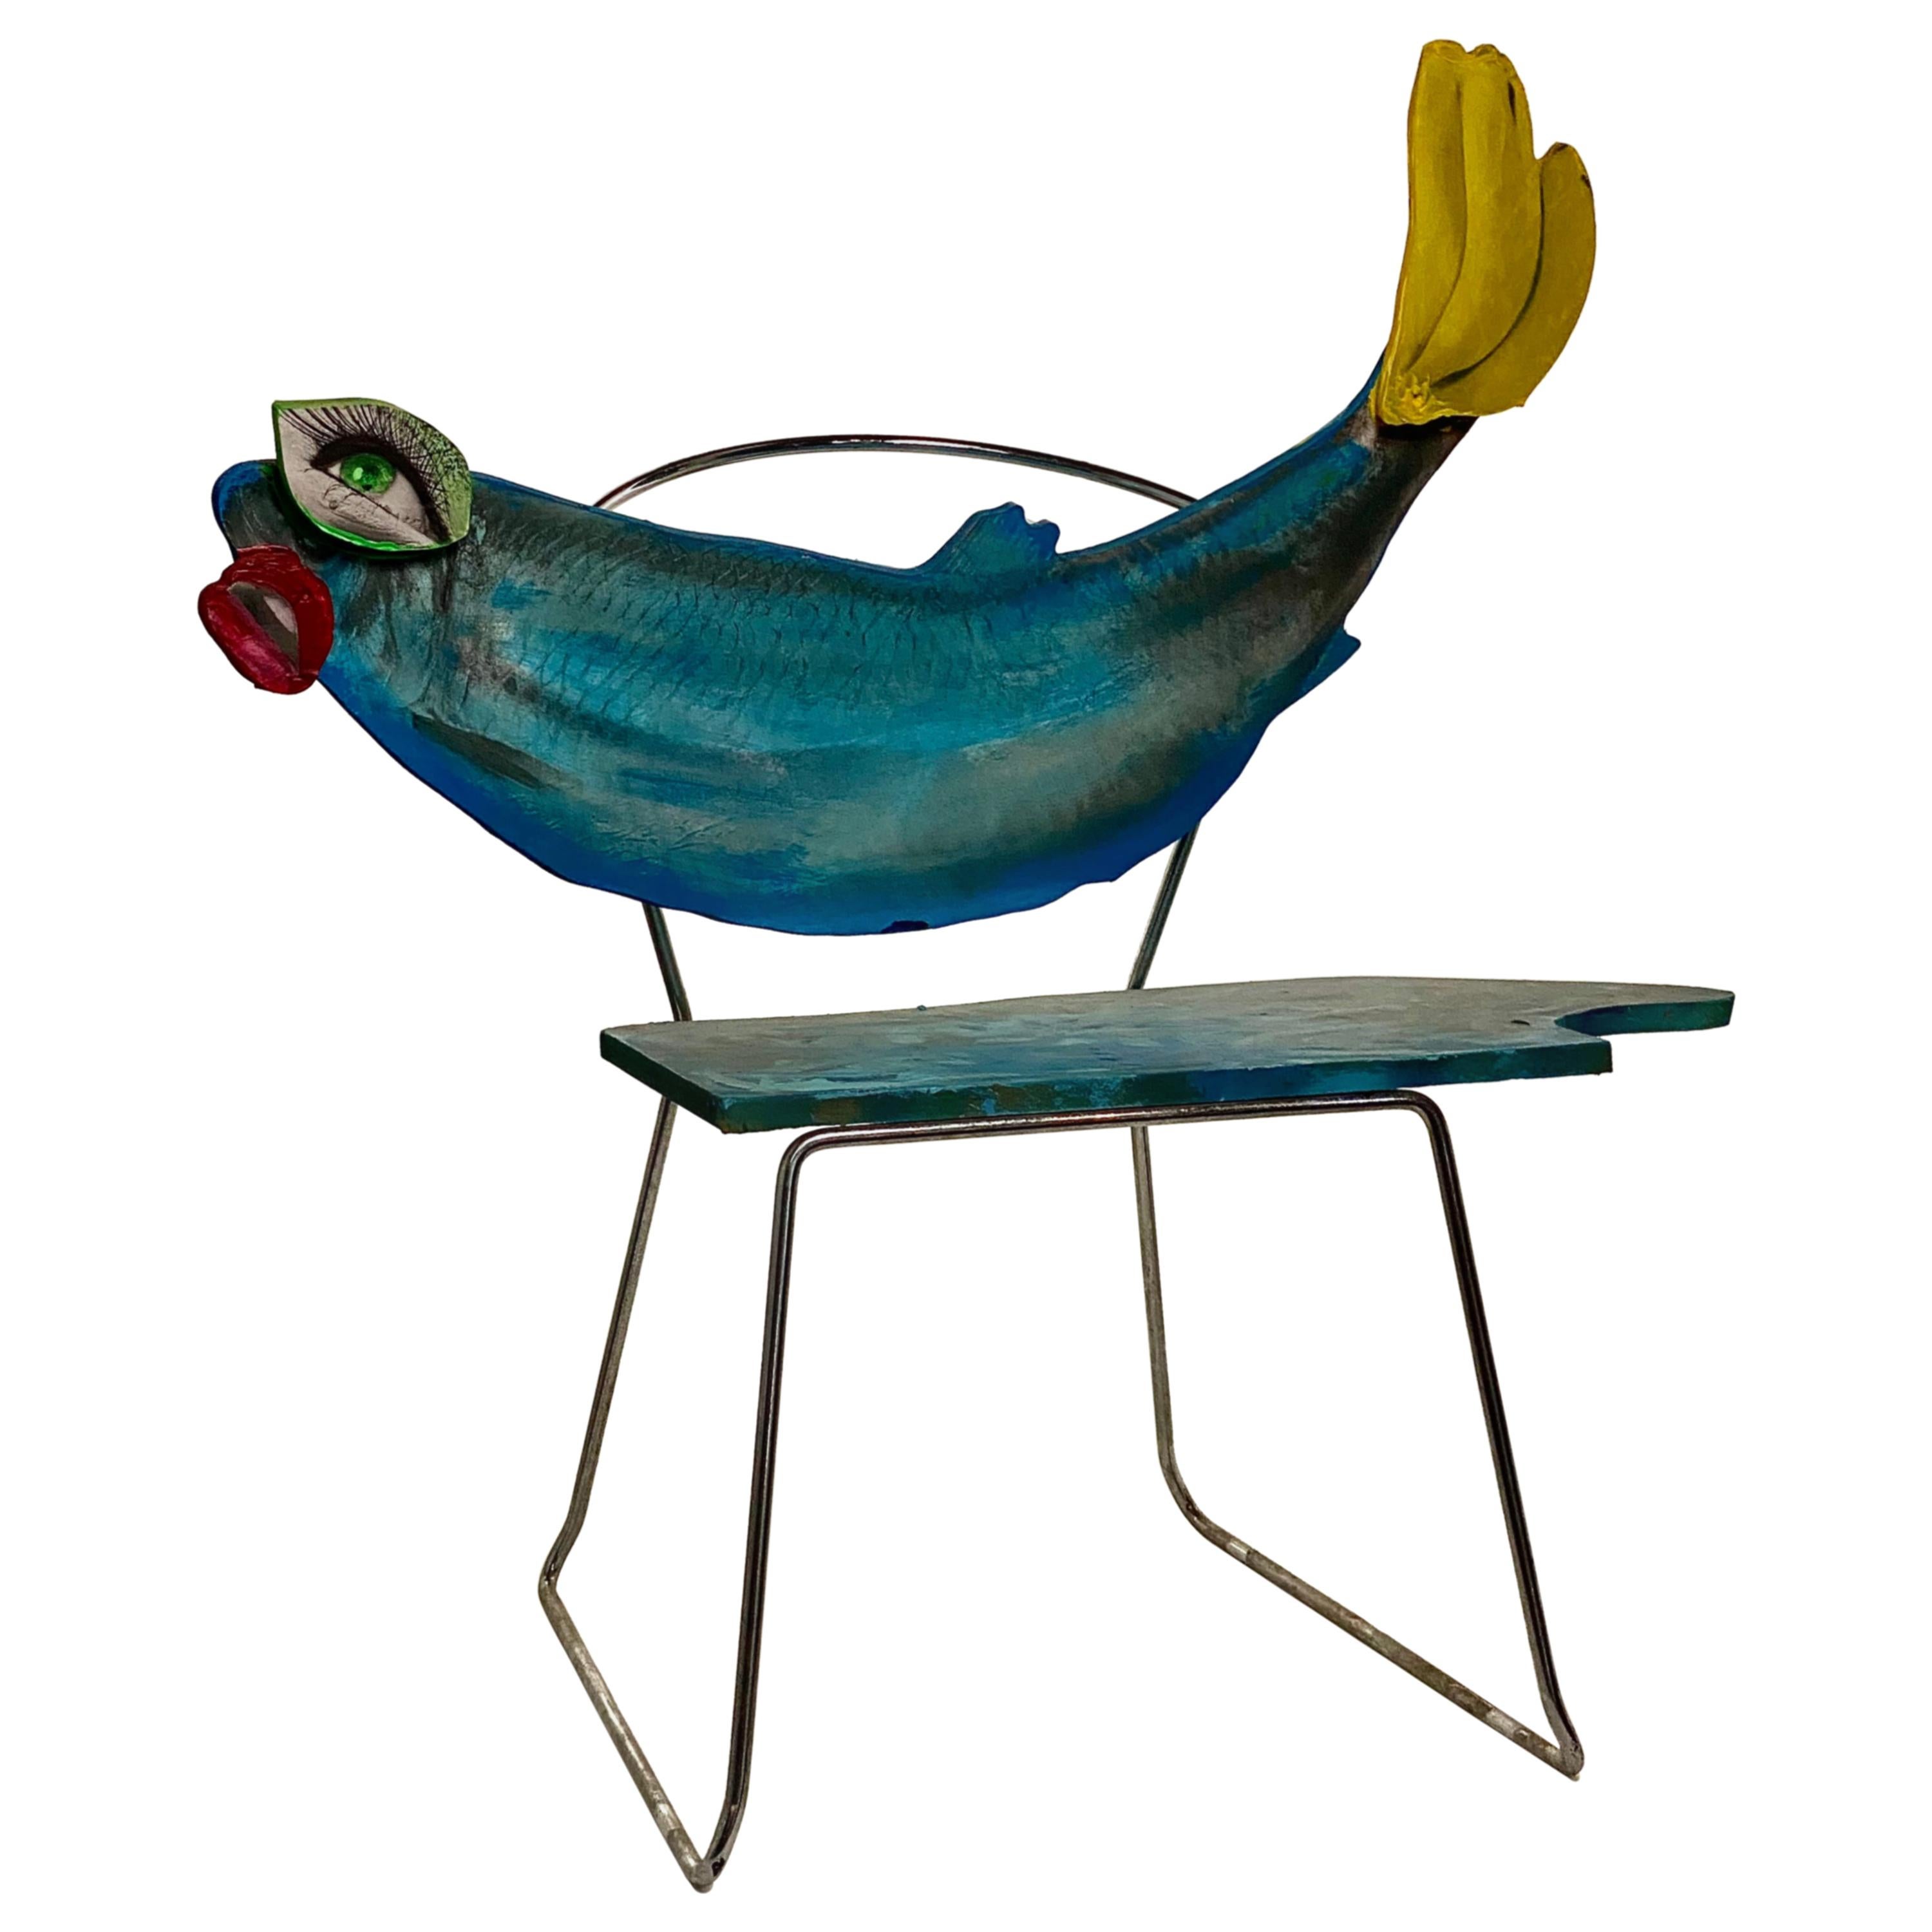 Blue Sculptural Fish Chair, 21st Century by Mattia Biagi